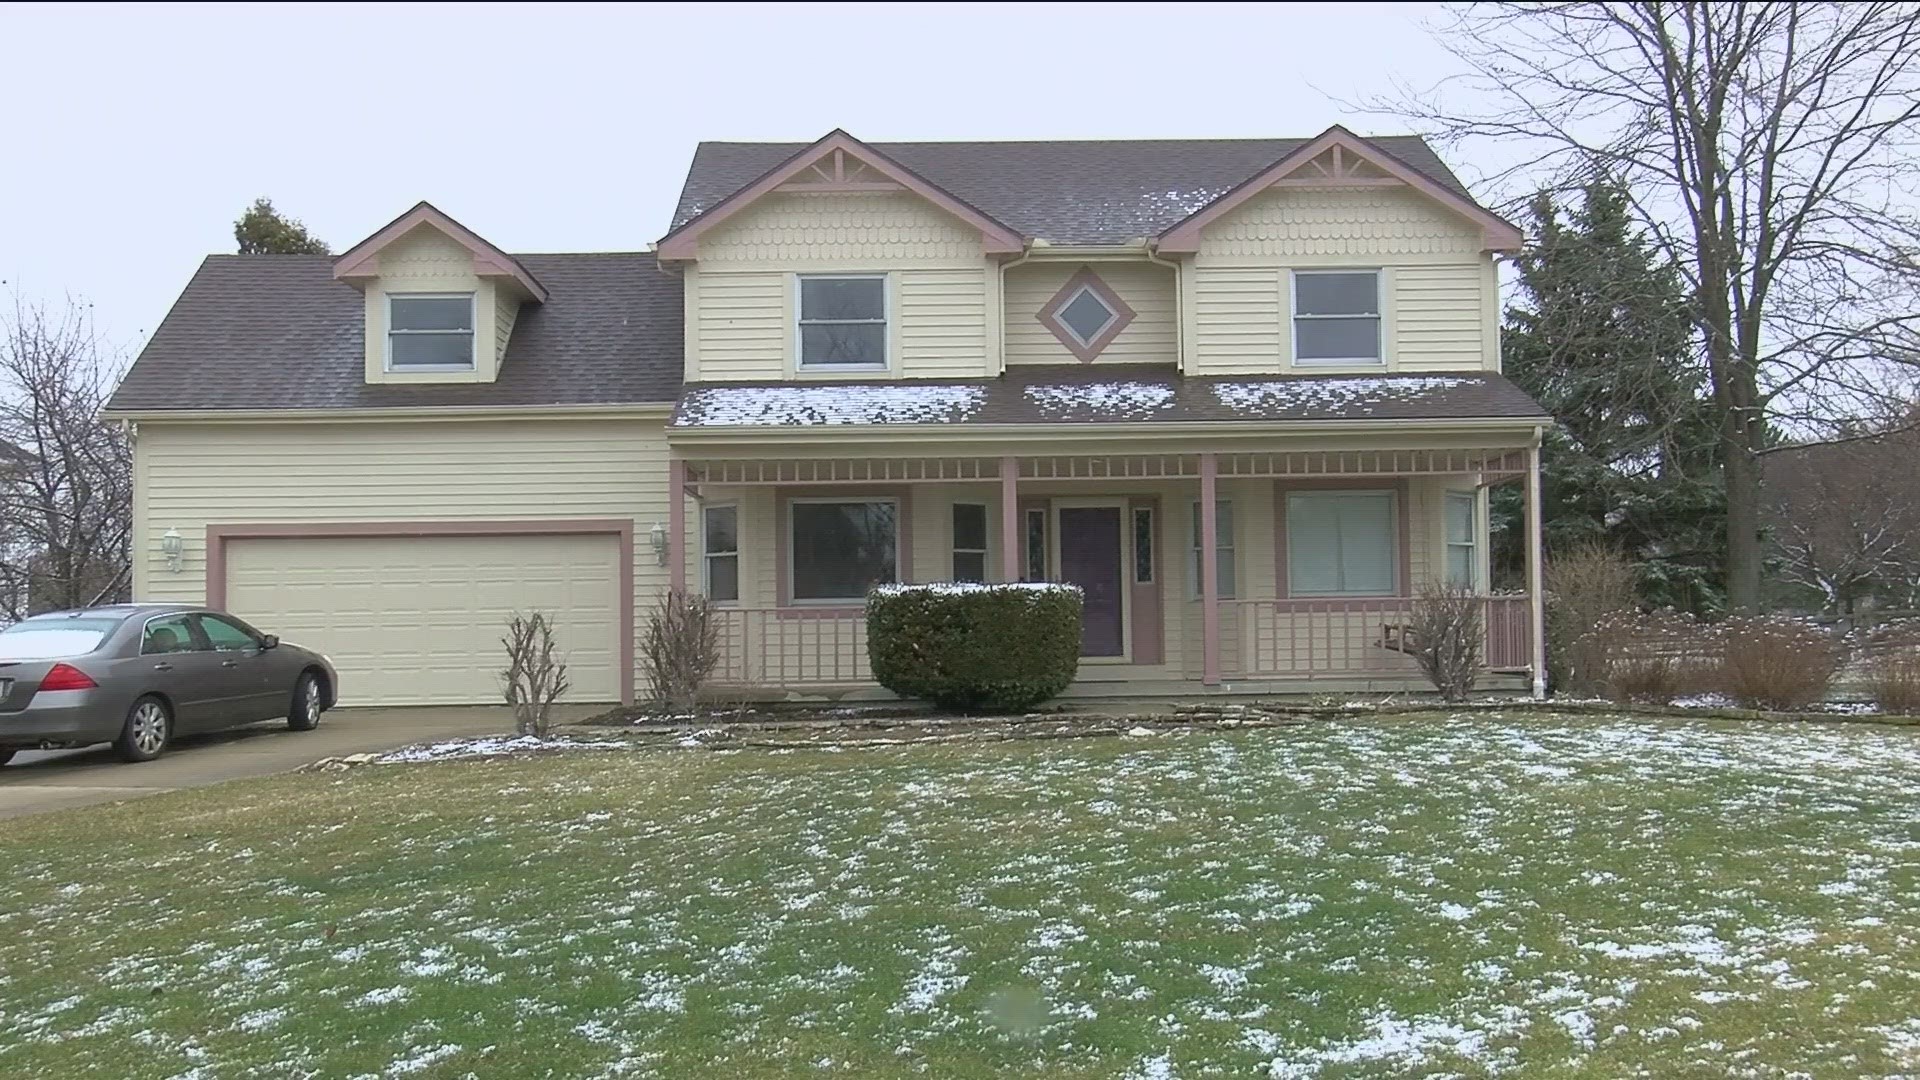 Perrysburg homeowner says contractors sold her belongings